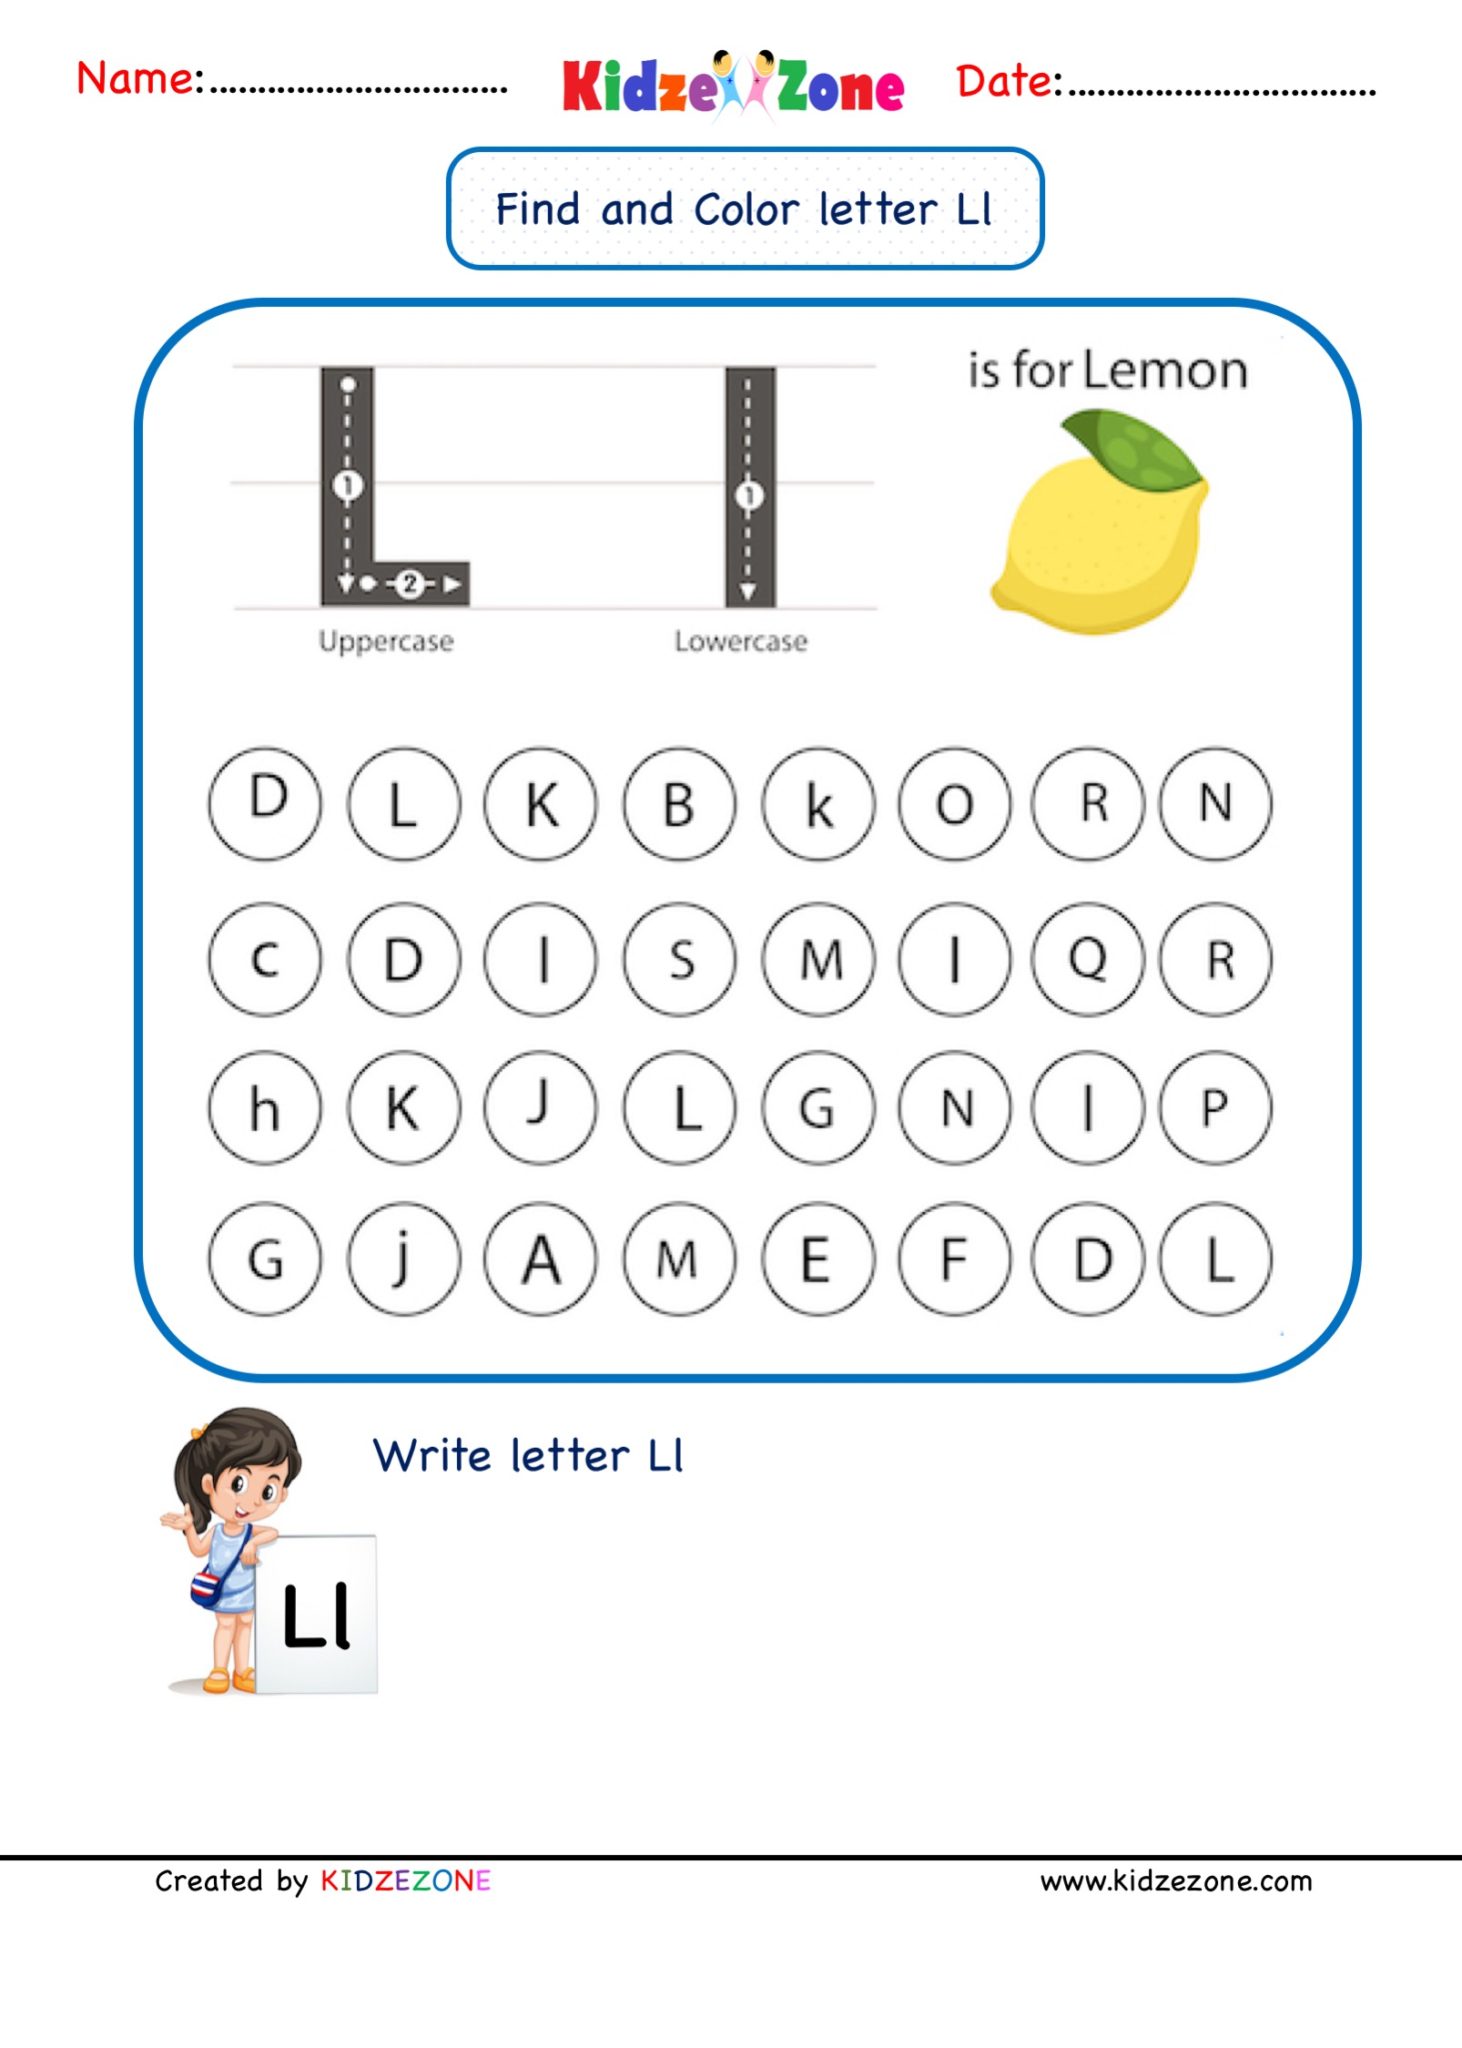 kindergarten-letter-l-worksheets-find-and-color-kidzezone